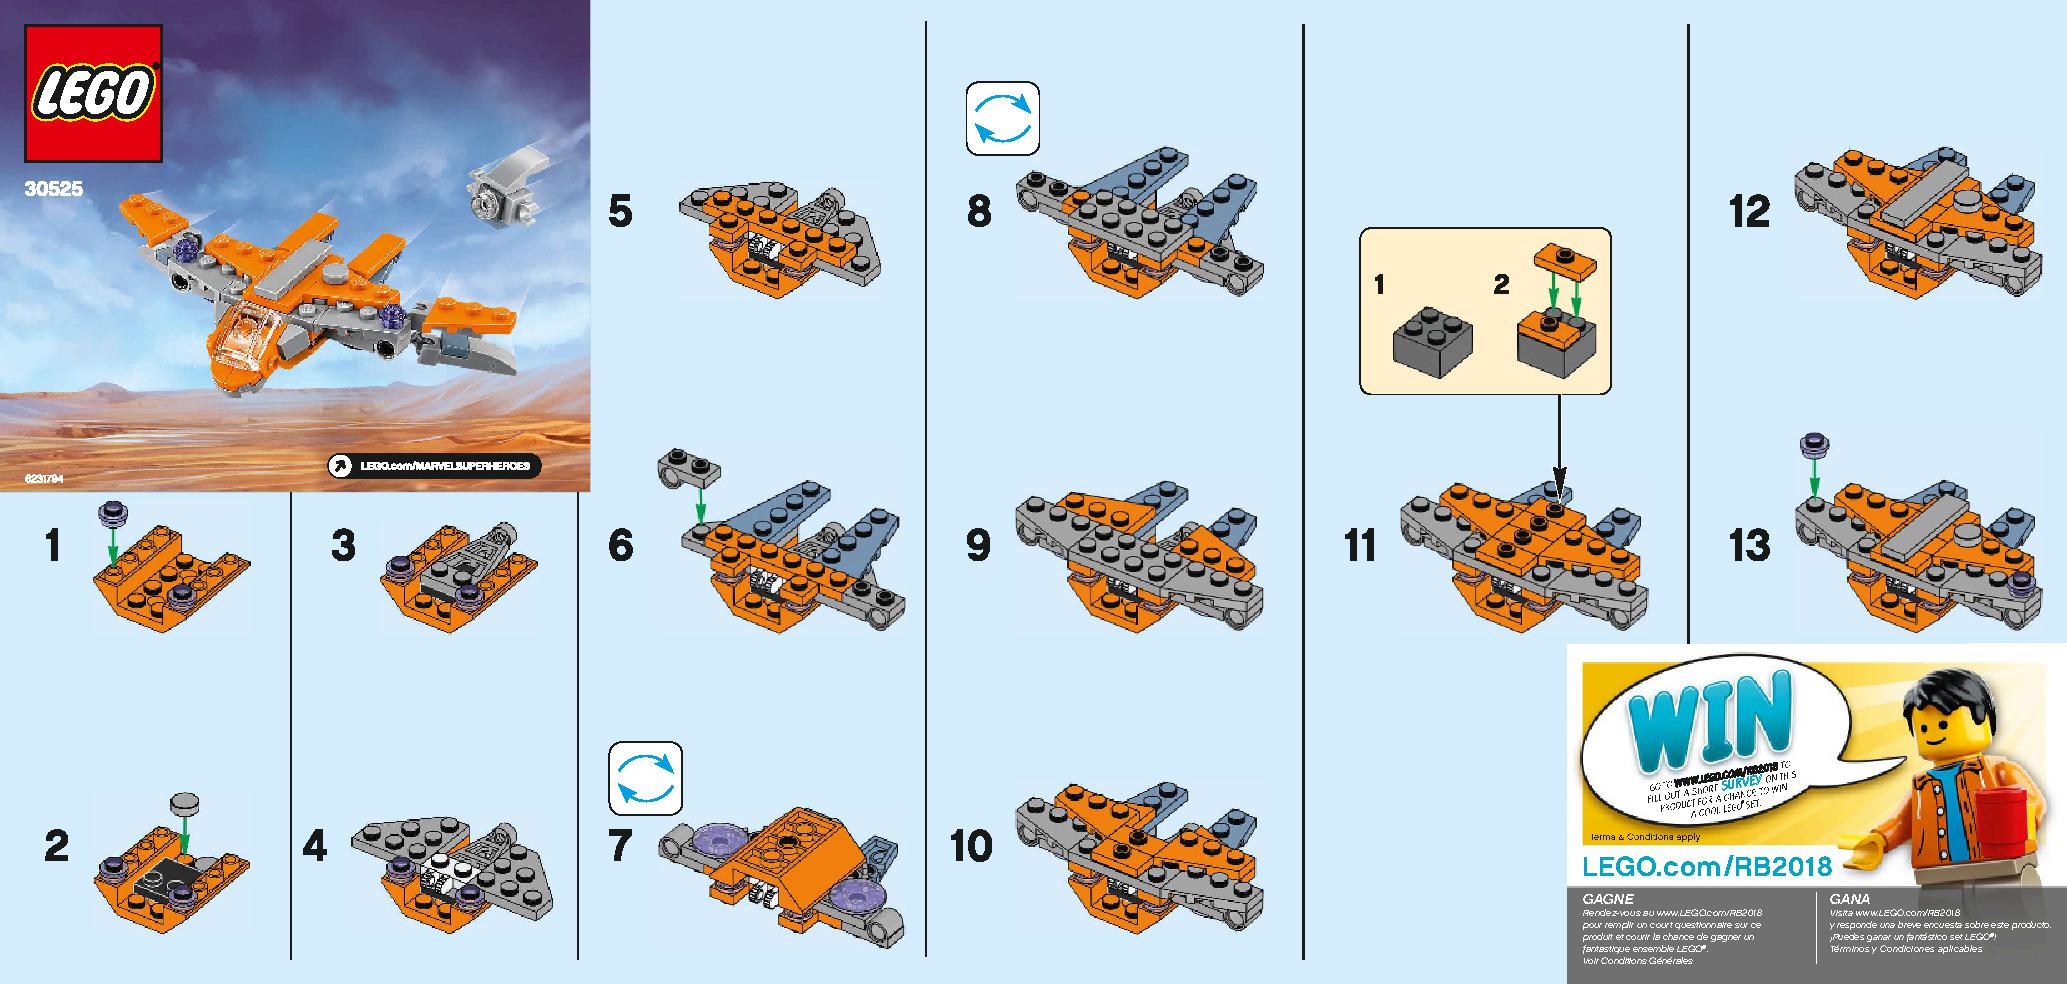 ガーディアンズの宇宙船 30525 レゴの商品情報 レゴの説明書・組立方法 1 page